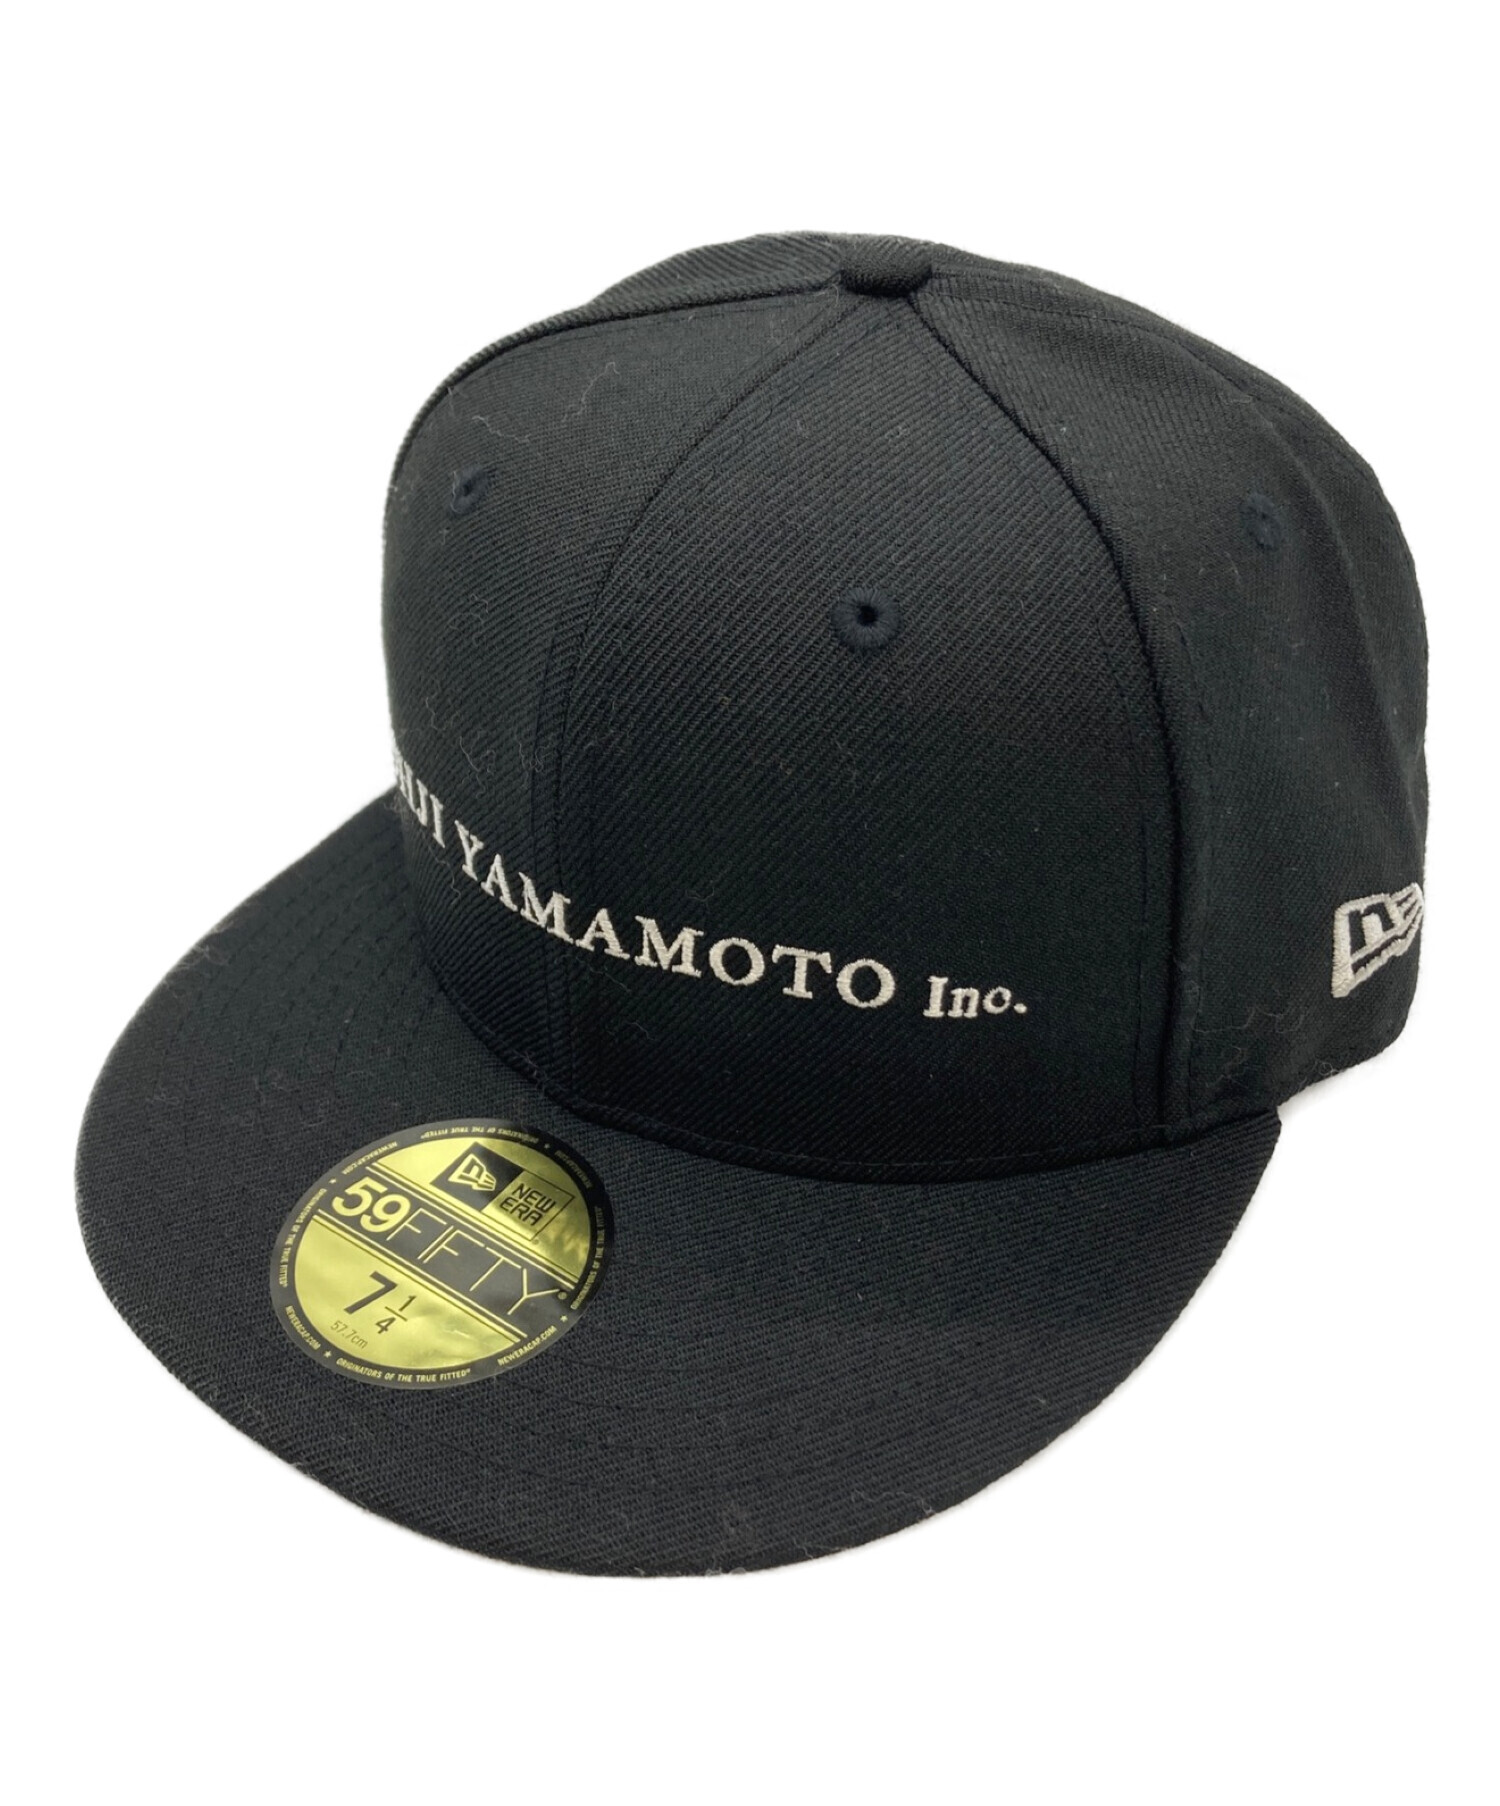 Yohji Yamamoto × New Era コラボ キャップ - 帽子